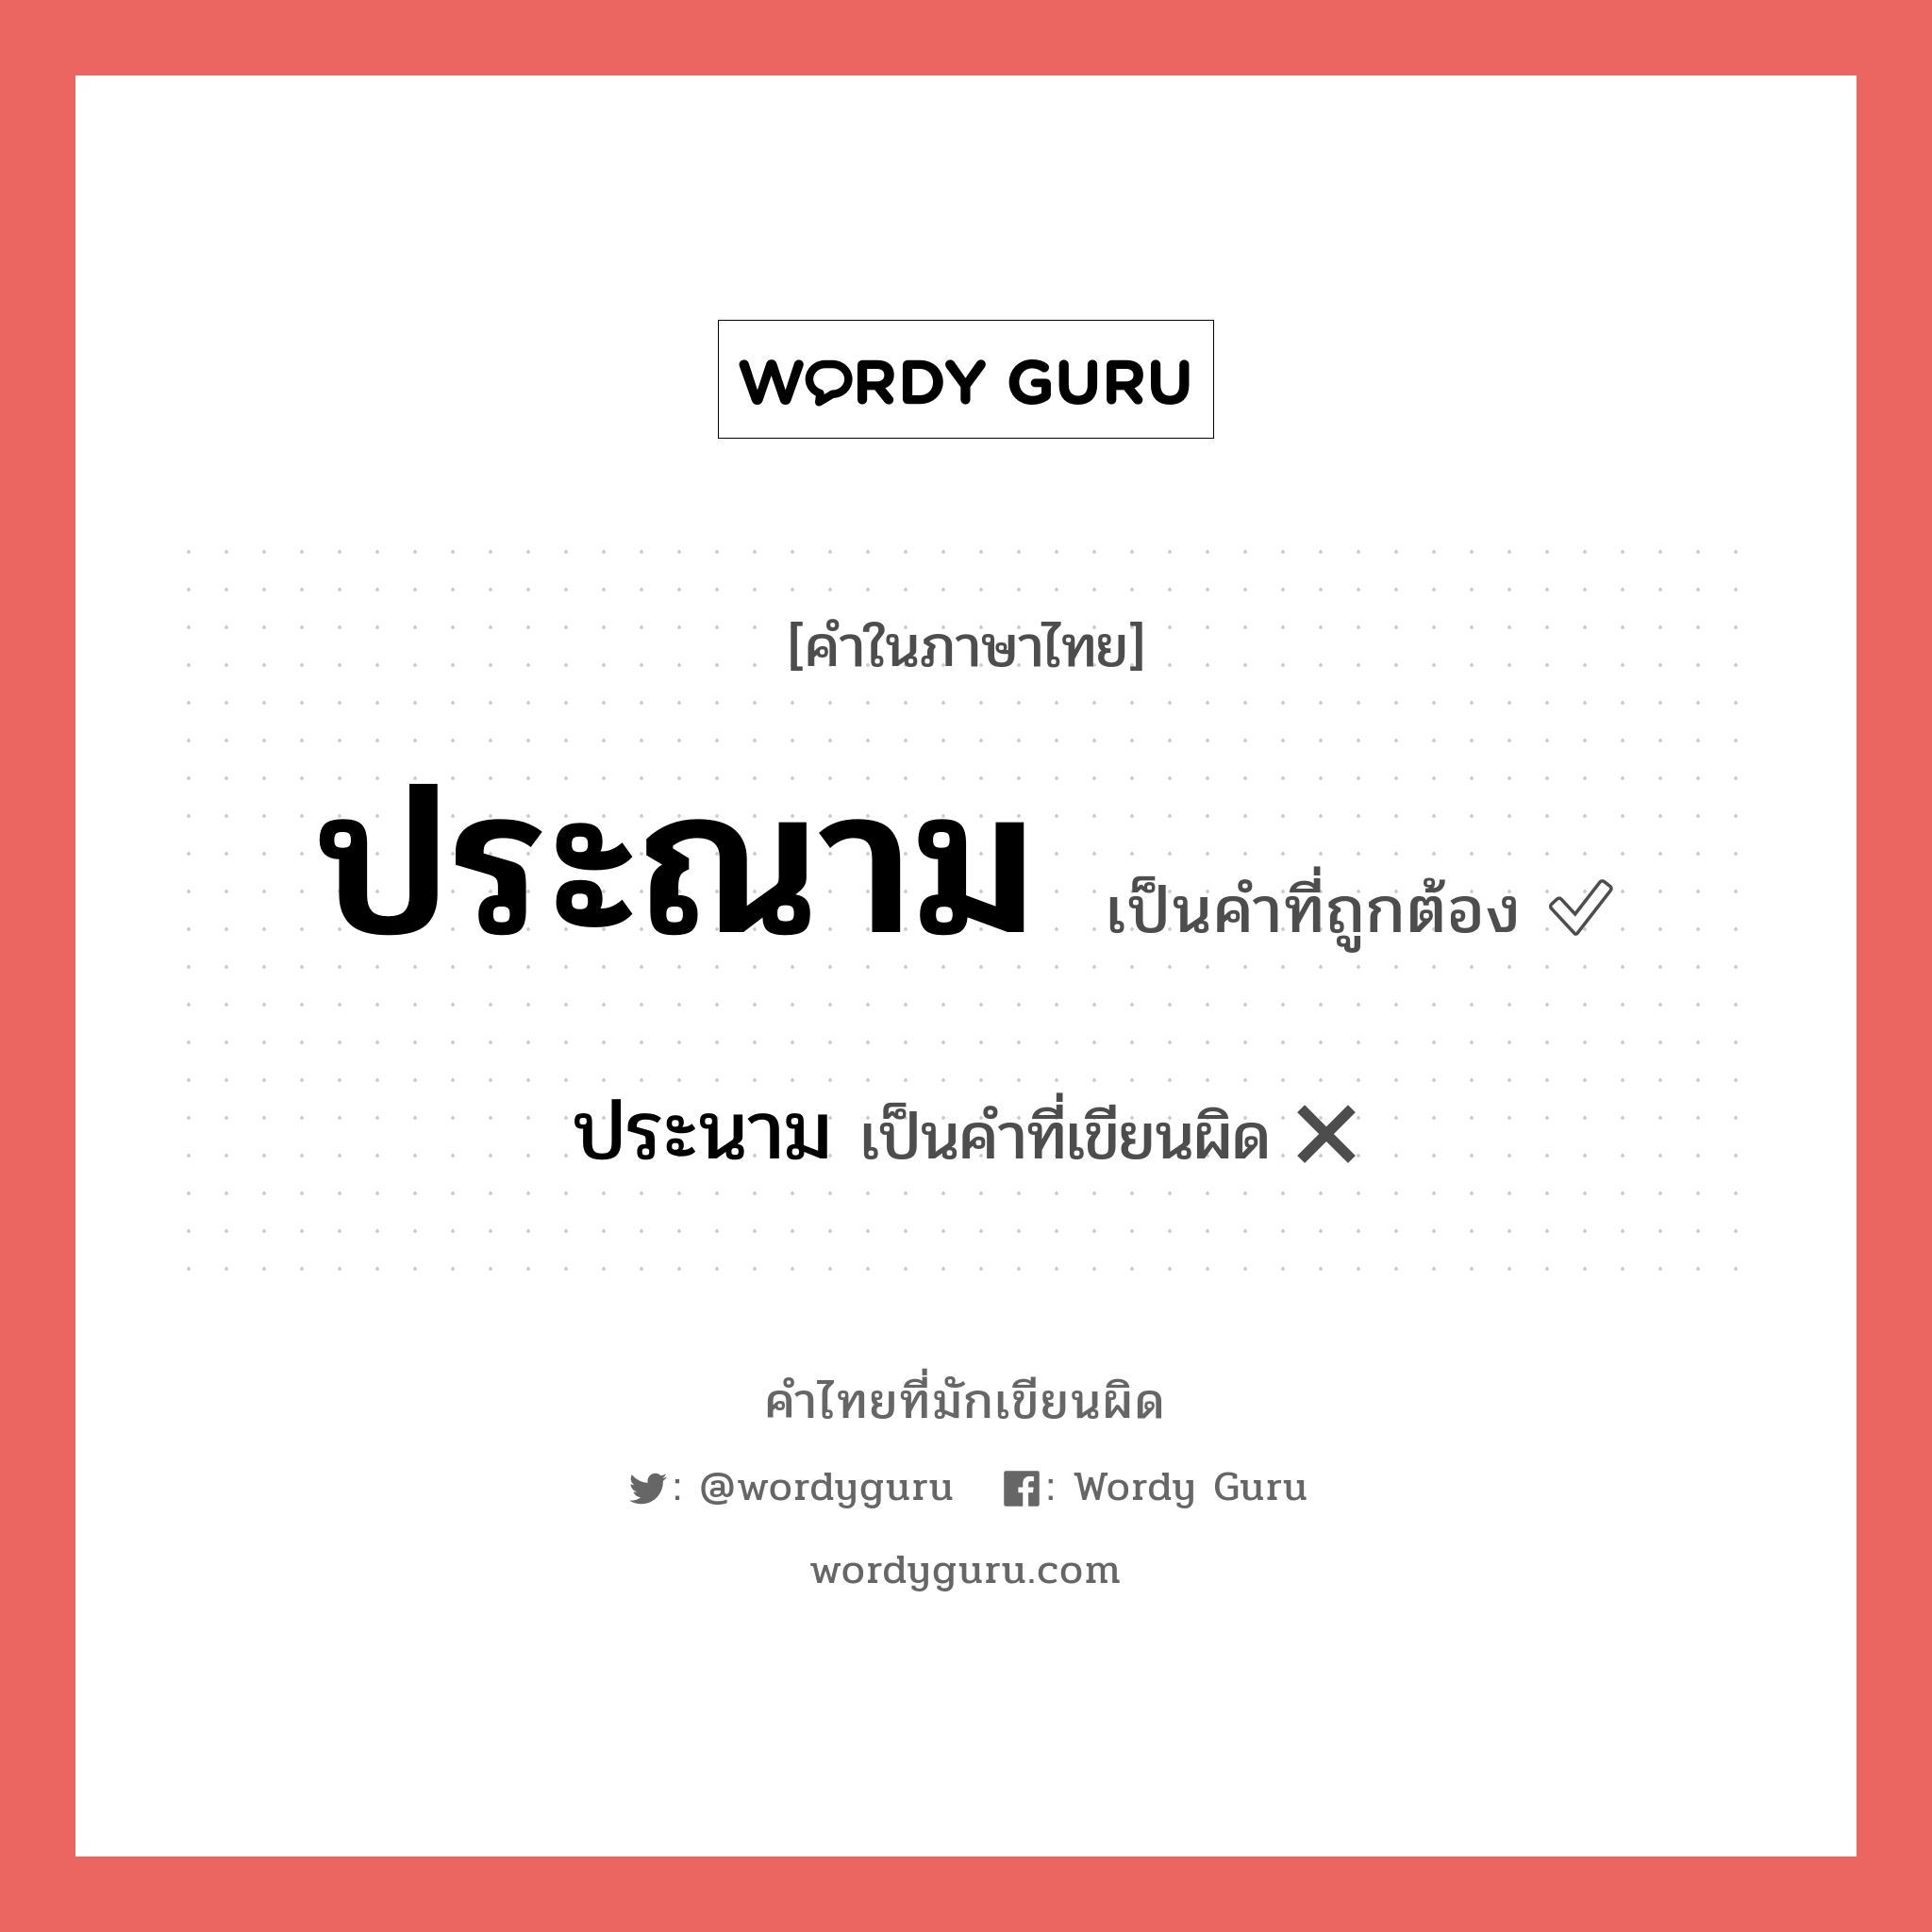 ประนาม หรือ ประณาม คำไหนเขียนถูก?, คำในภาษาไทยที่มักเขียนผิด ประนาม คำที่ผิด ❌ ประณาม